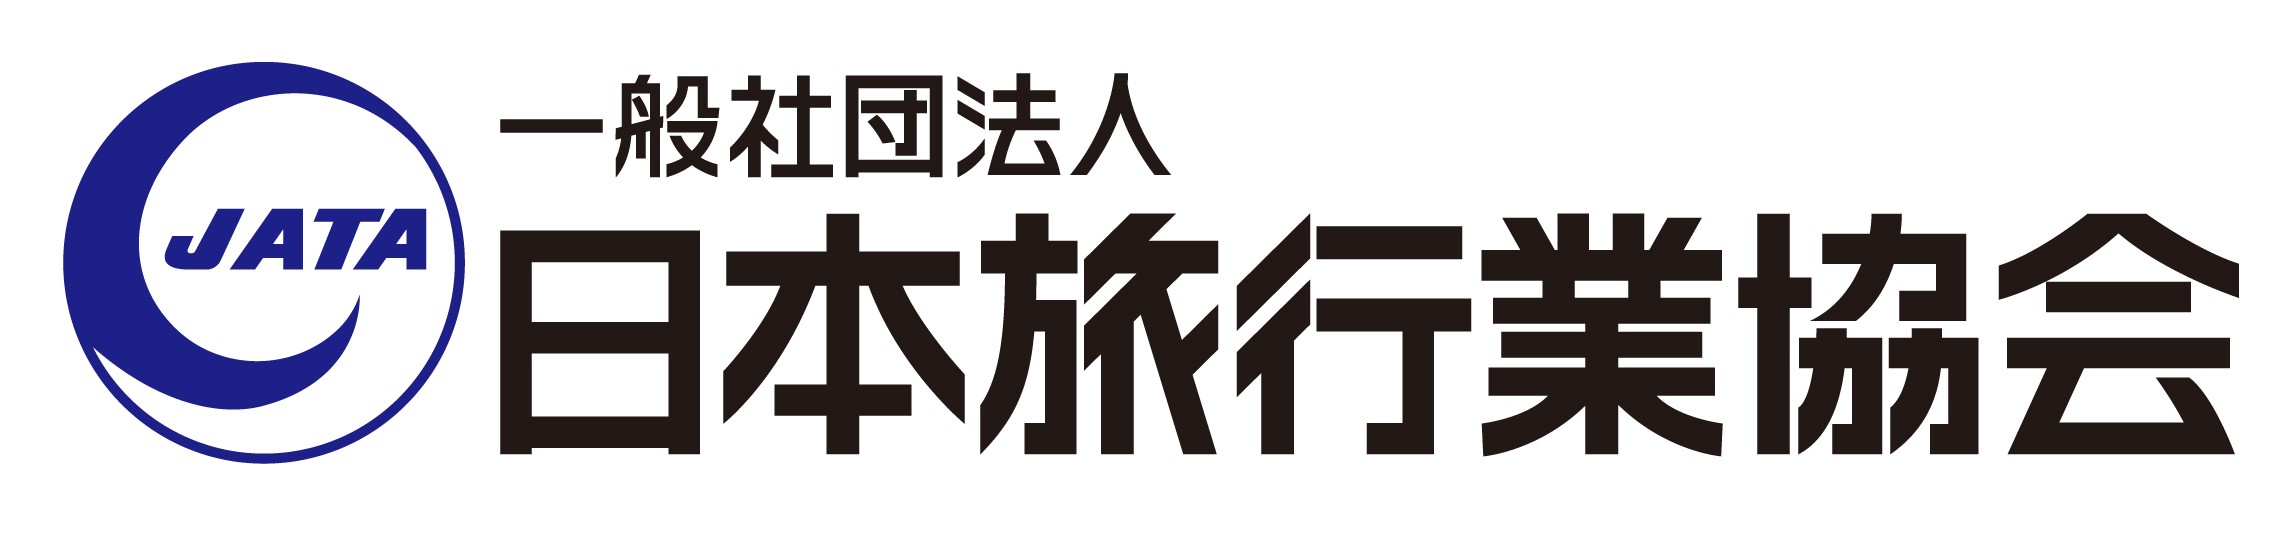 日本旅行業協会ロゴ